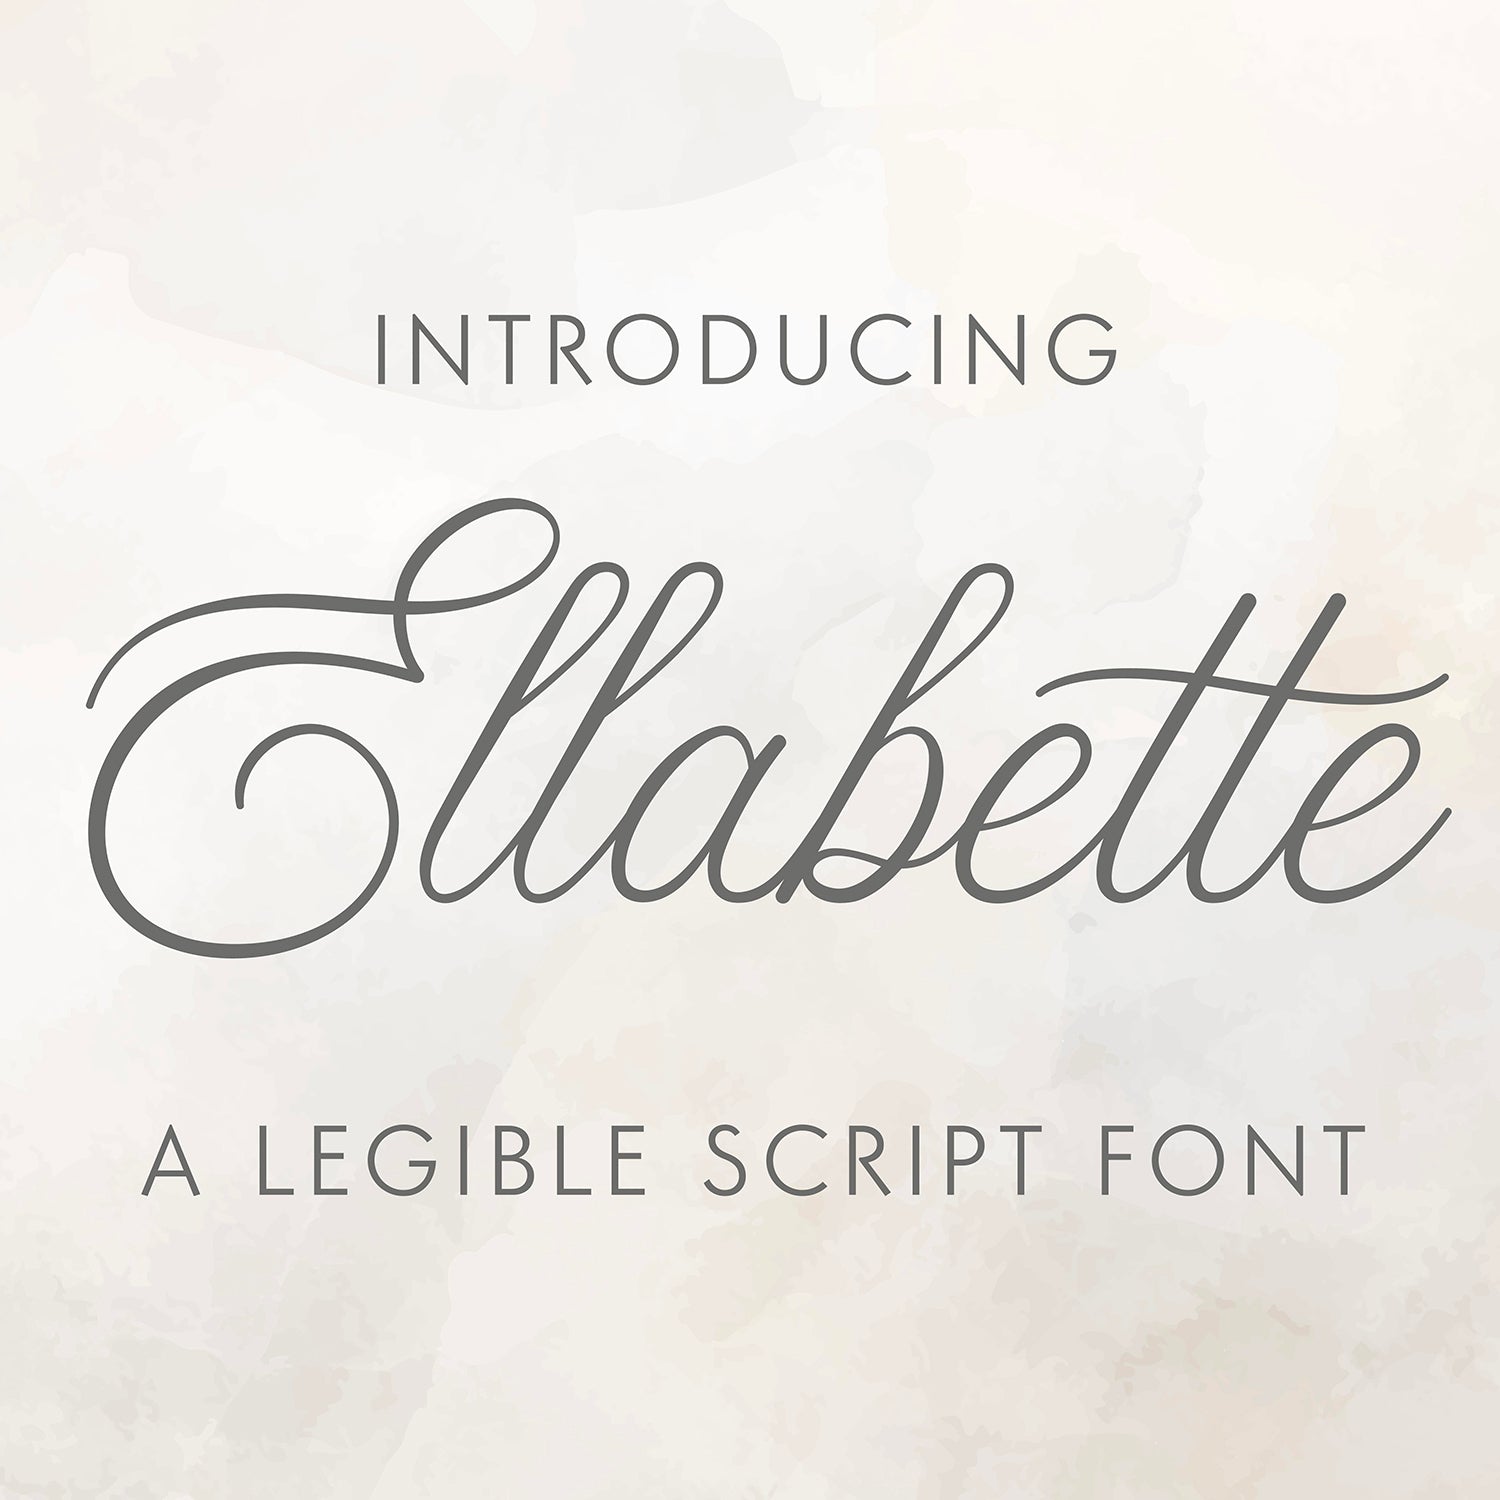 Ellabette Script Font